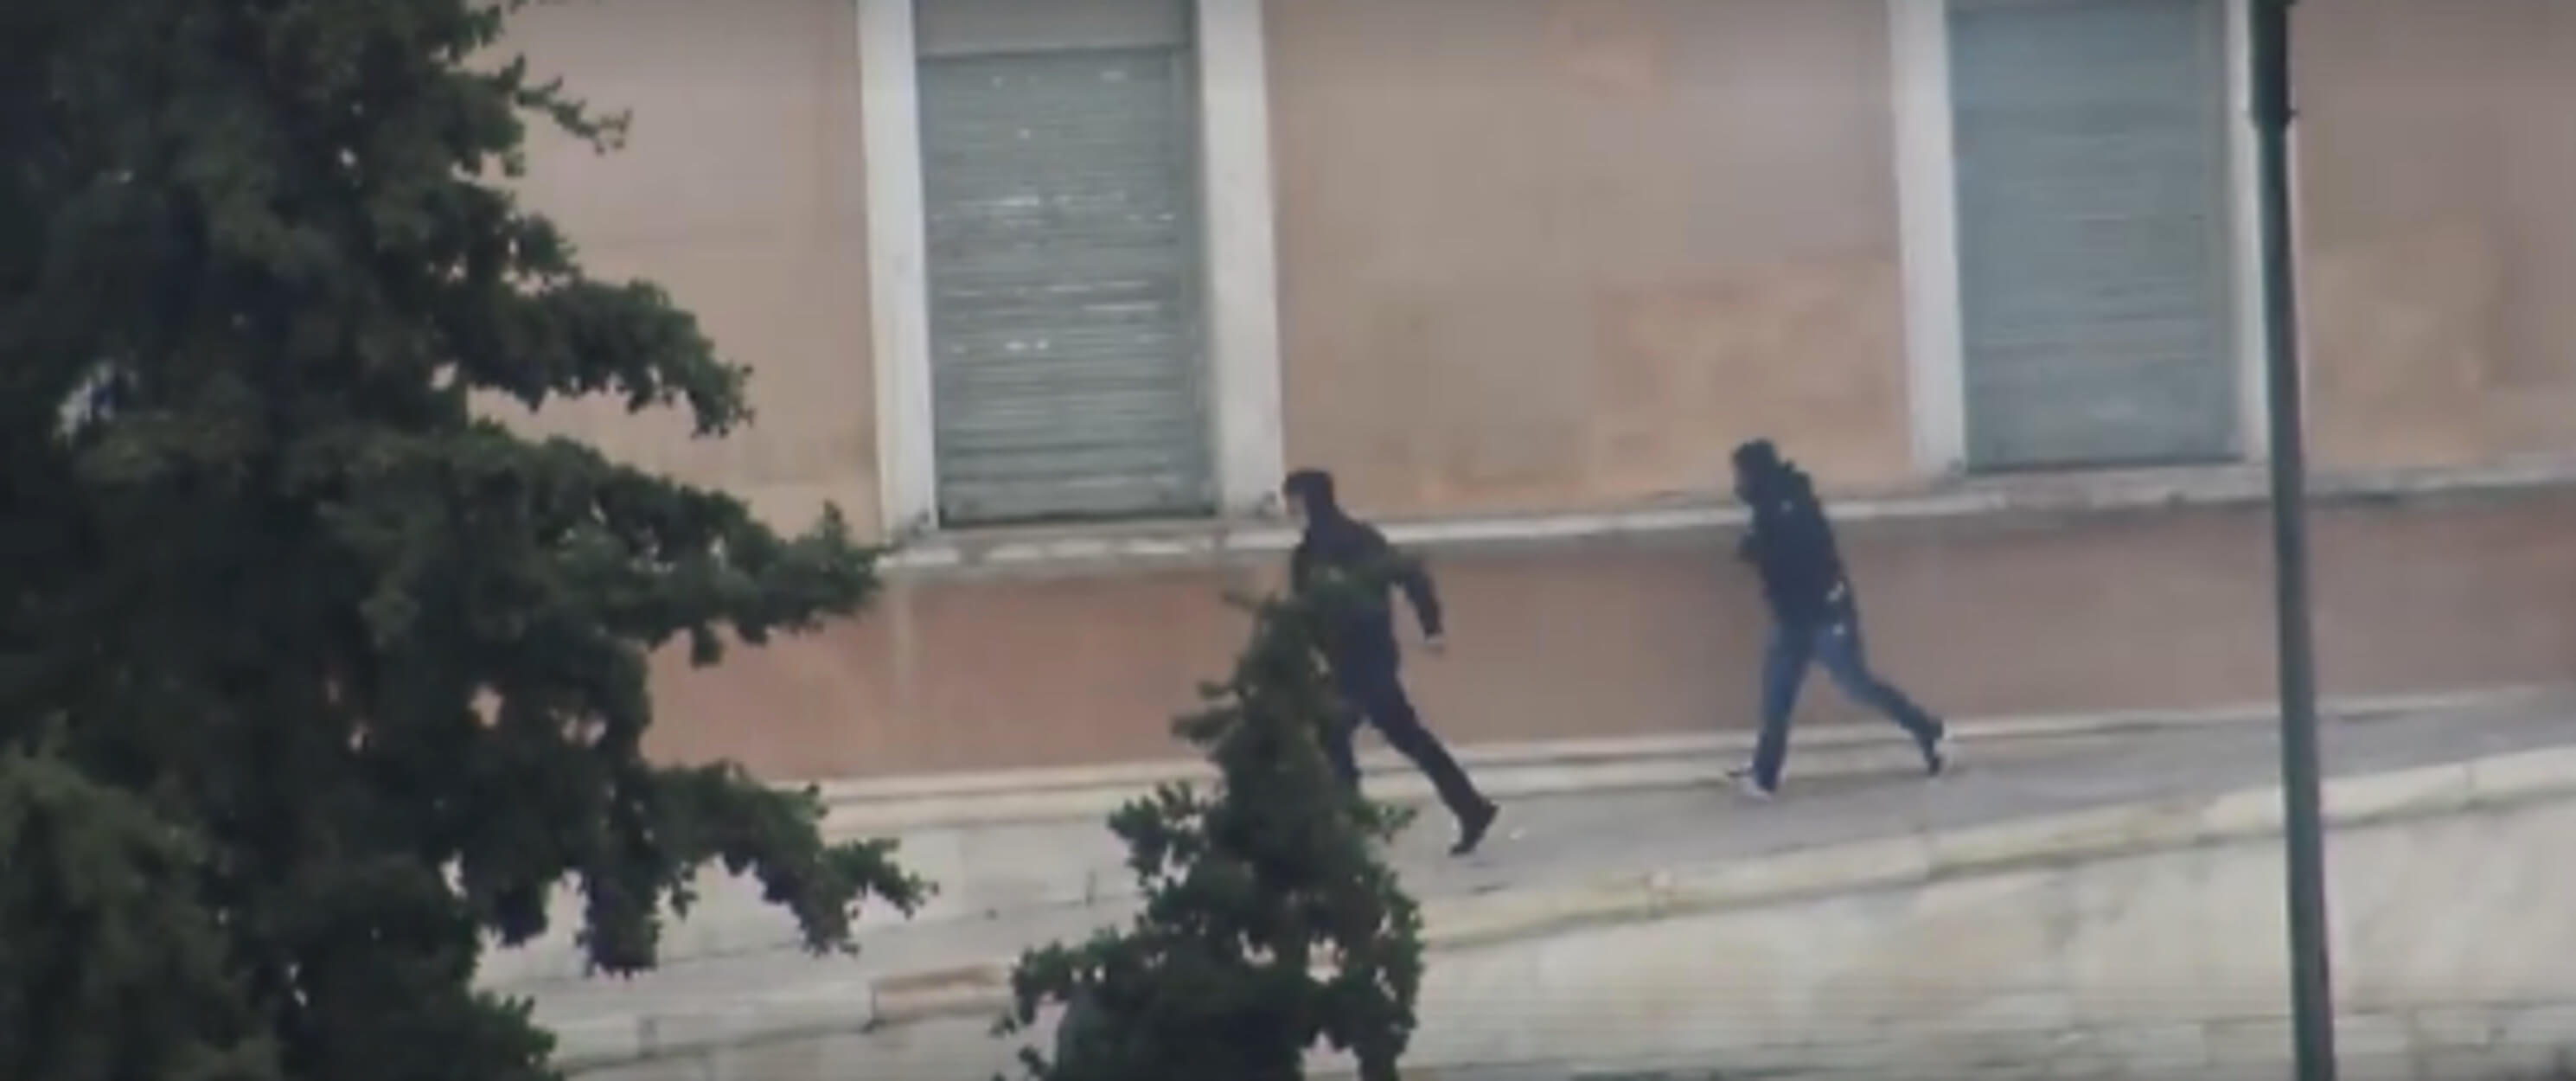 Γεροβασίλη: Αστυνομικοί οι κουκουλοφόροι στο περιστύλιο της Βουλής! [video]